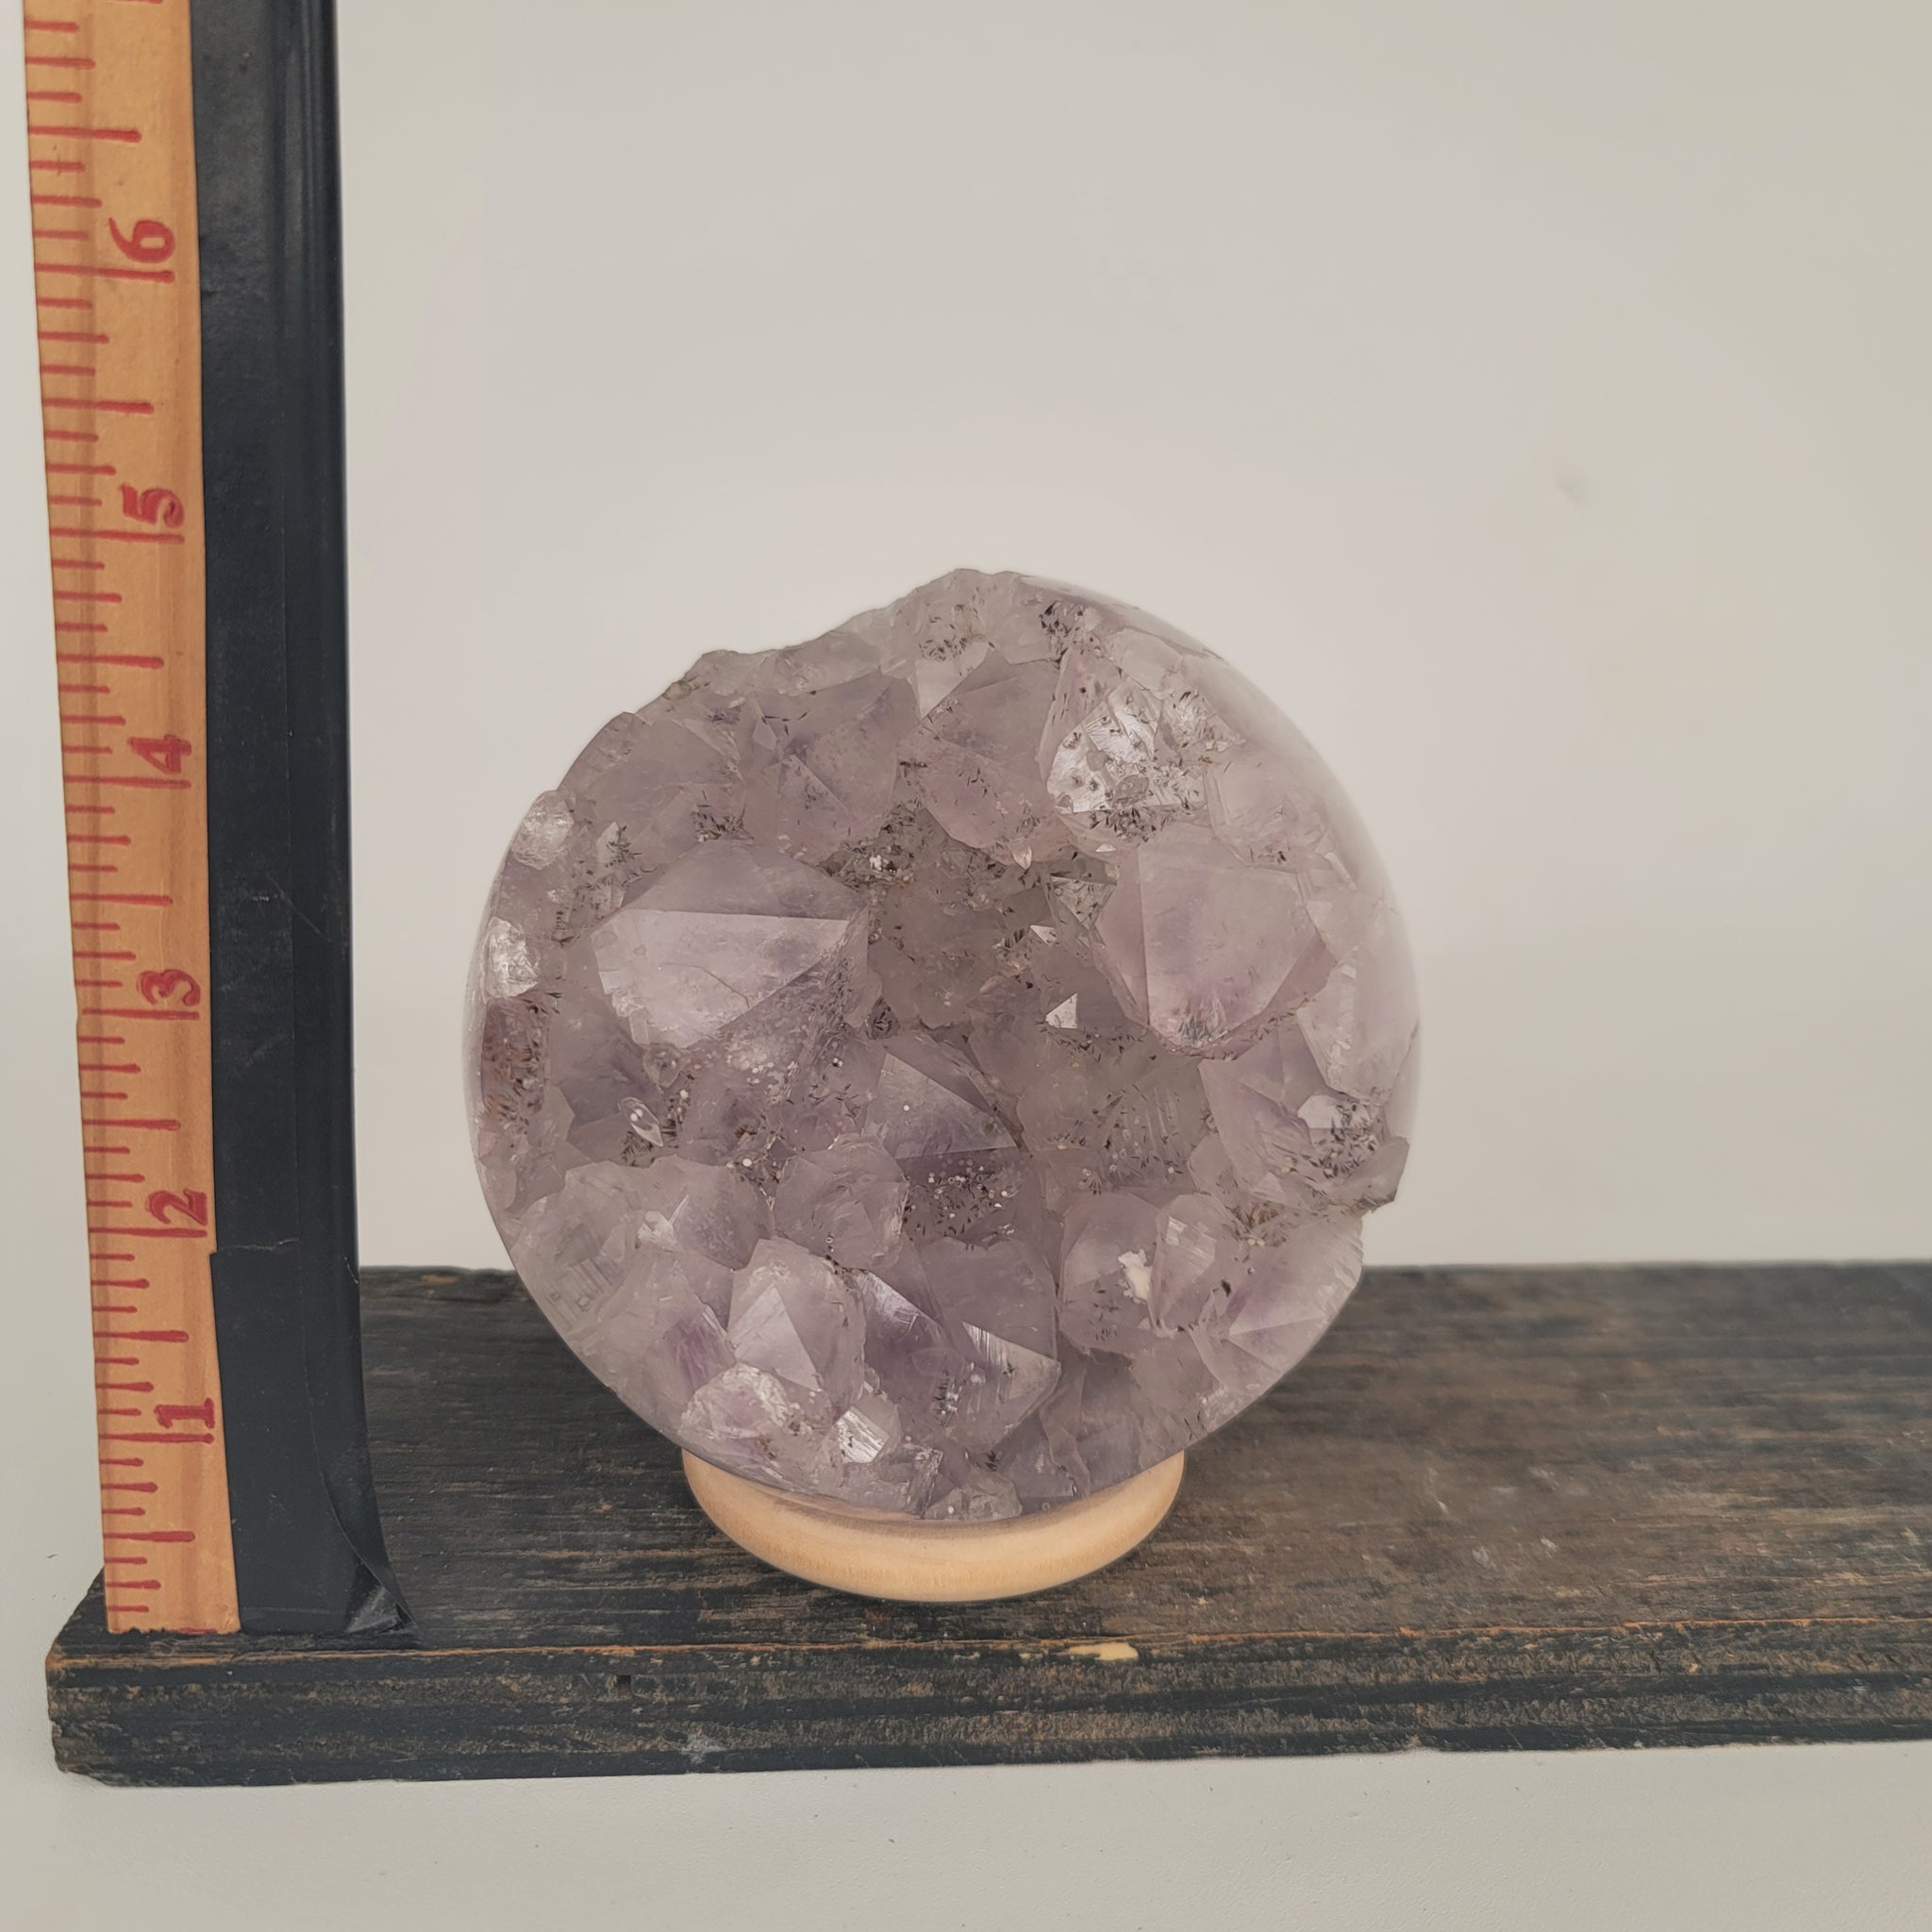 Amethyst Geode Sphere (6.7 lbs _ S-103)